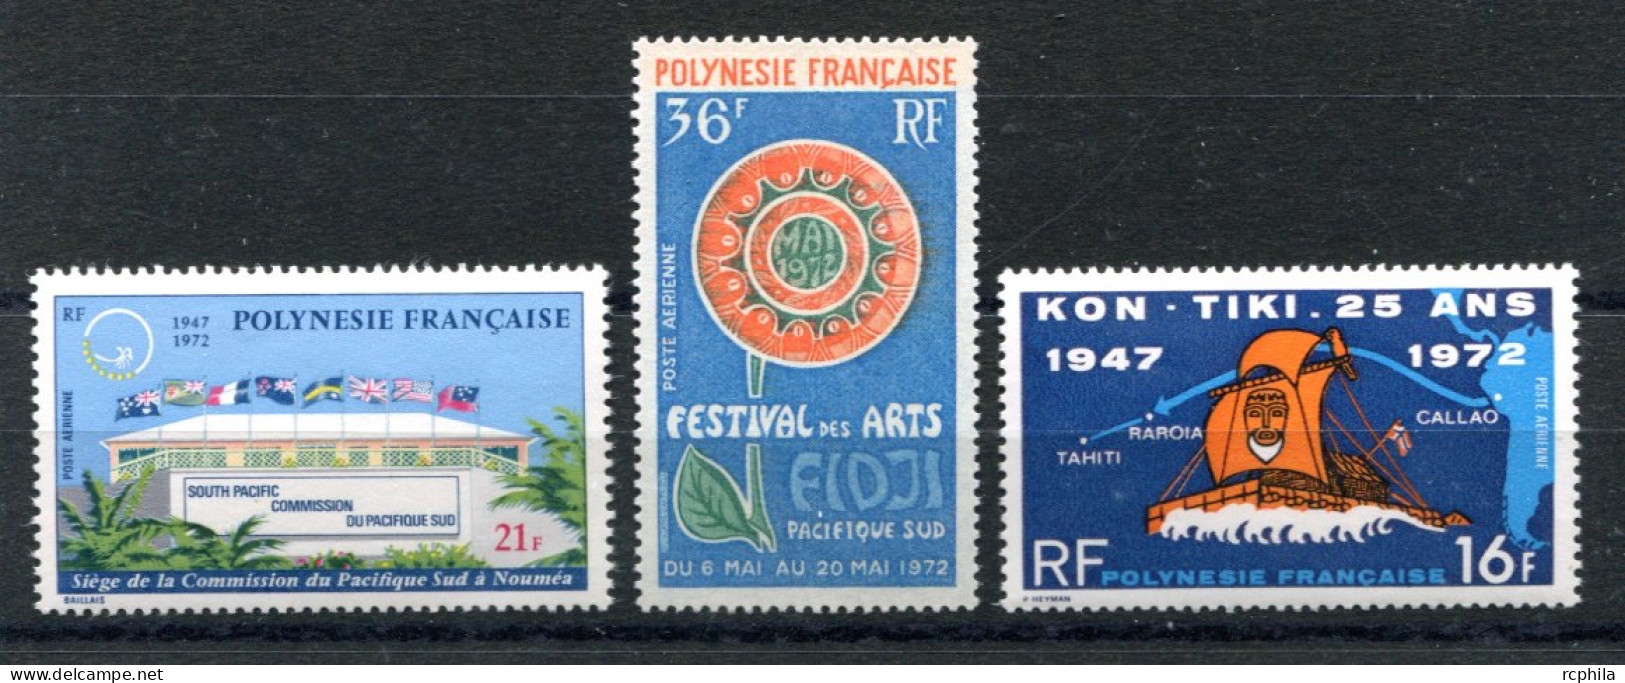 RC 25821 POLYNÉSIE COTE 44€ PA N° 62 / 64 COMMISSION ET ARTS DU PACIFIQUE SUD KON-TIKI NEUF ** MNH TB - Unused Stamps